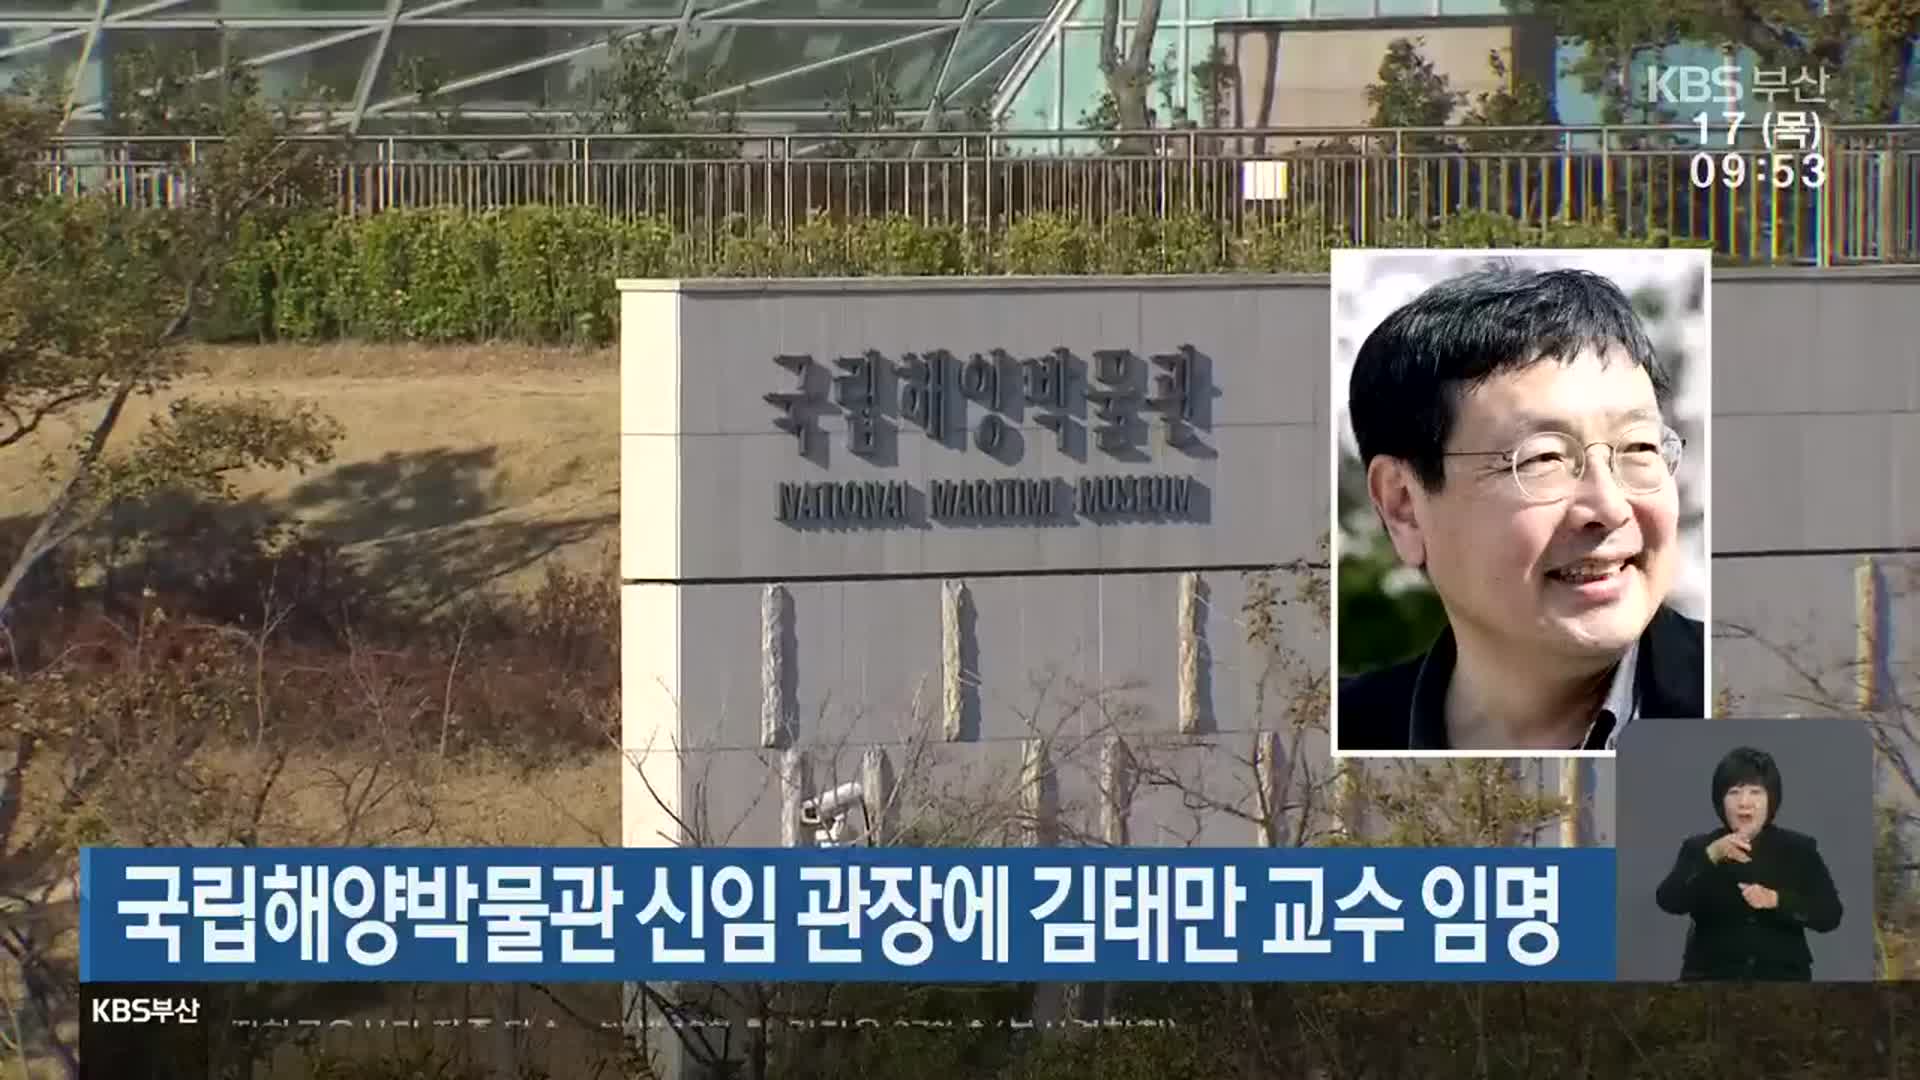 국립해양박물관 신임 관장에 김태만 교수 임명